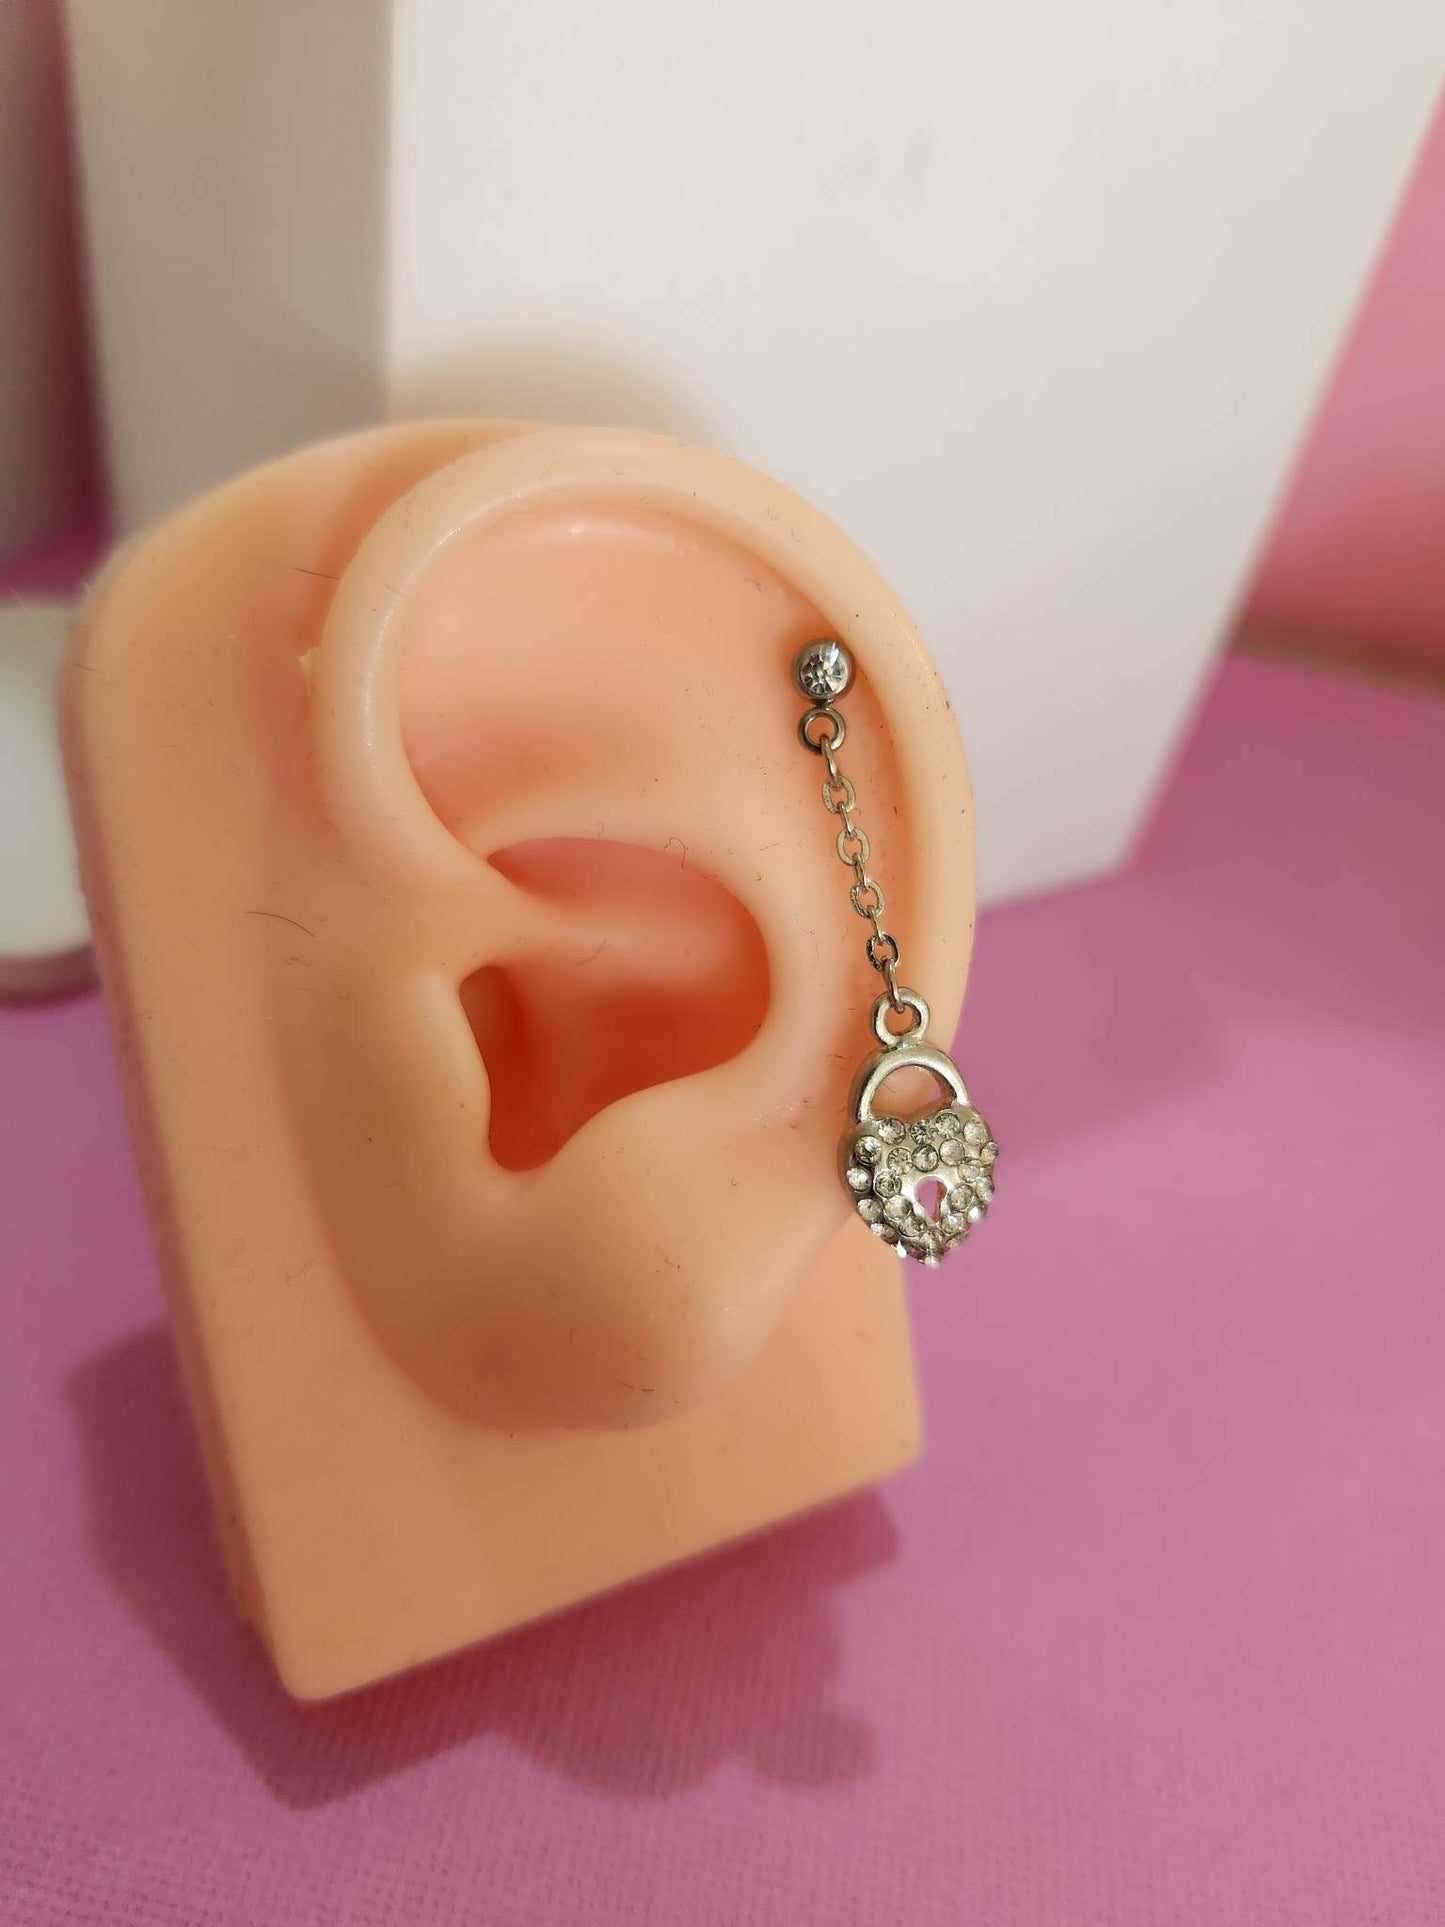 Multi Gem Heart Lock Chain Ear Piercing Tragus Cartilage Flat Rook Earrings - Pierced n Proud